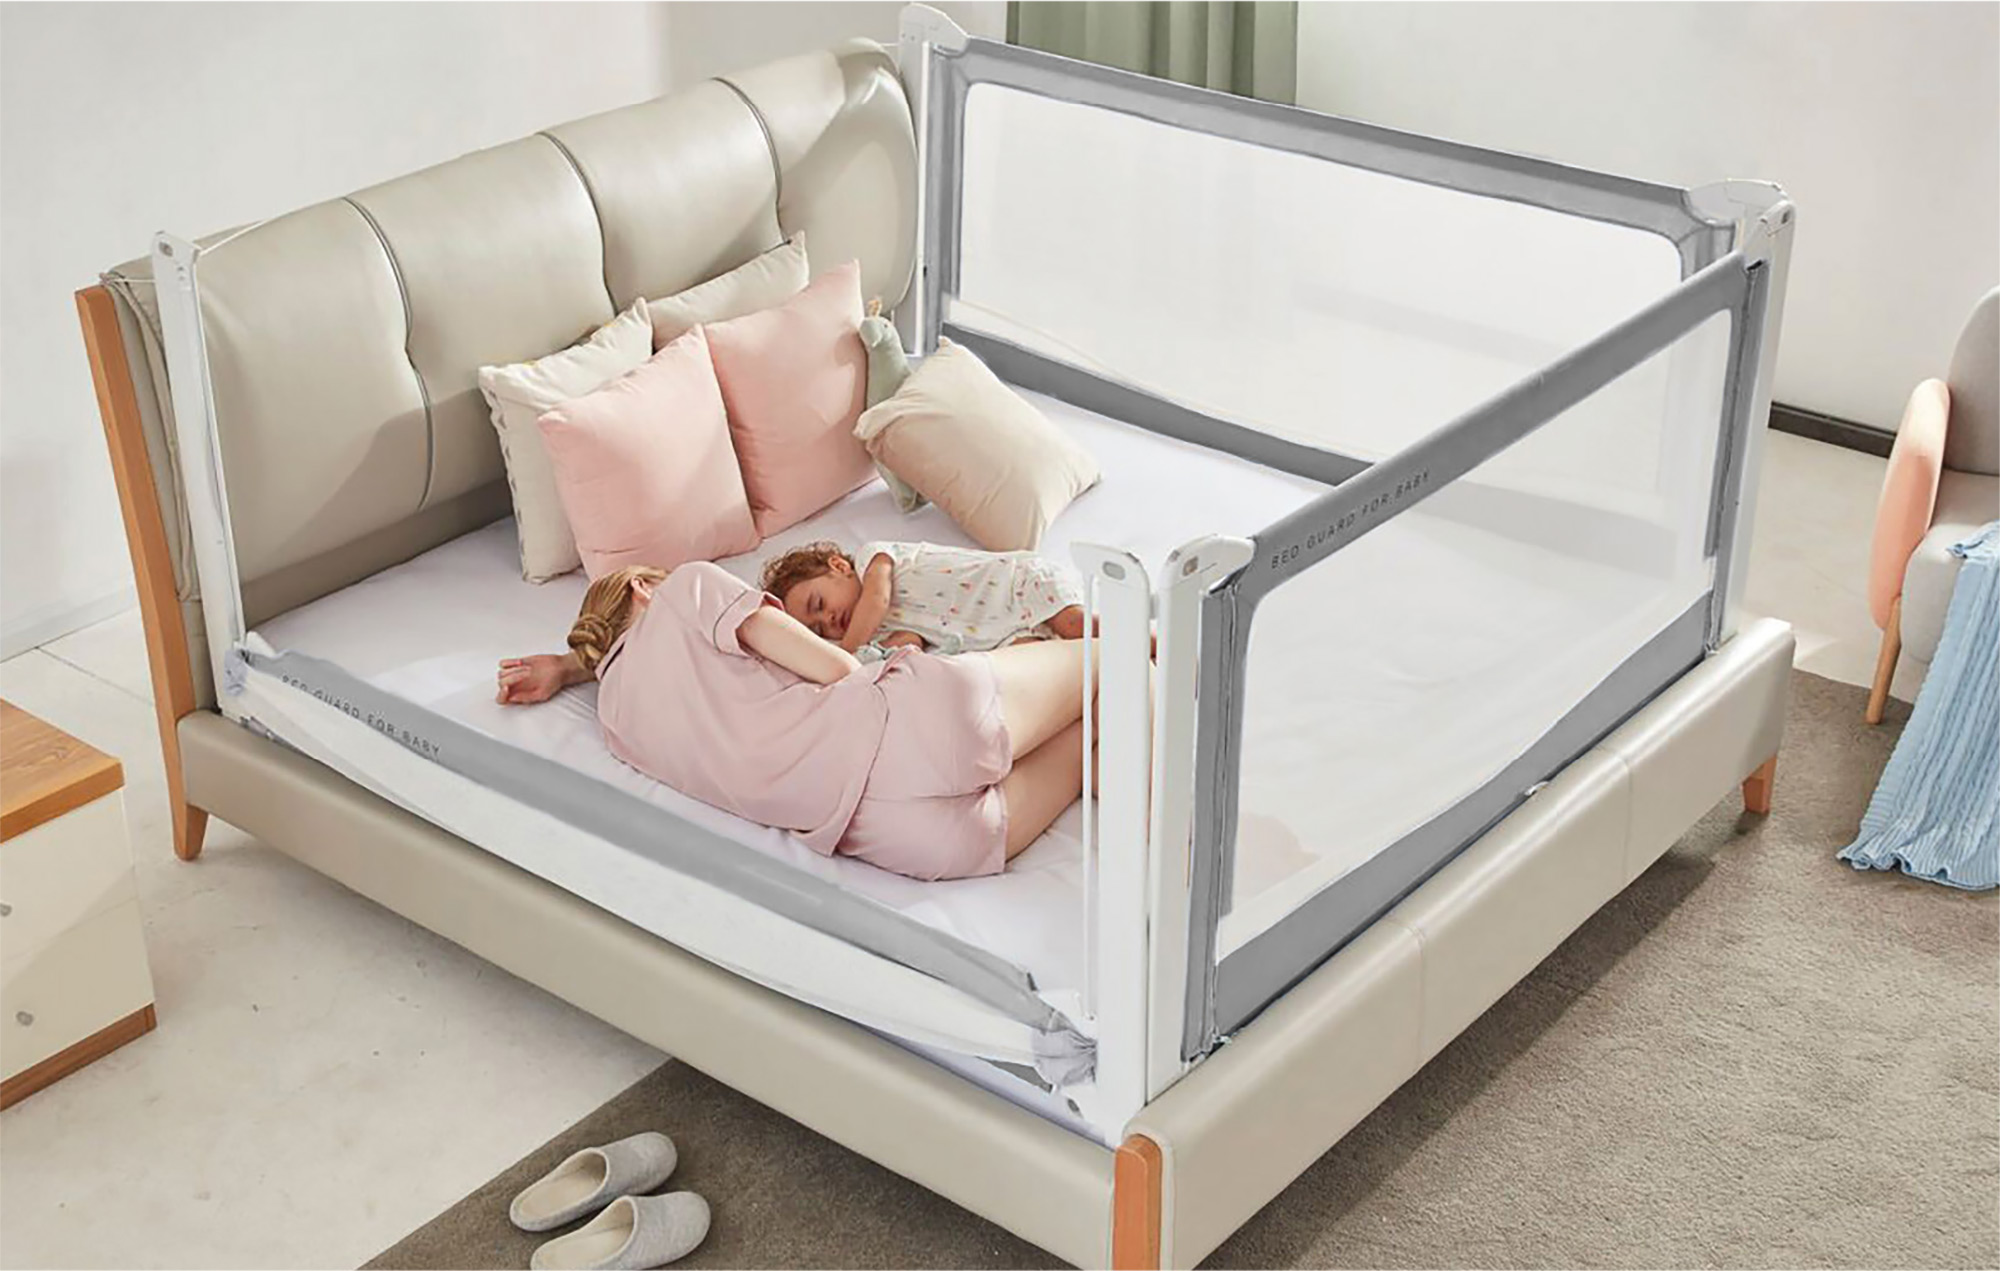 Culo Solenoide los padres de crianza Las mejores barreras de cama para bebés · CompraMejor.es